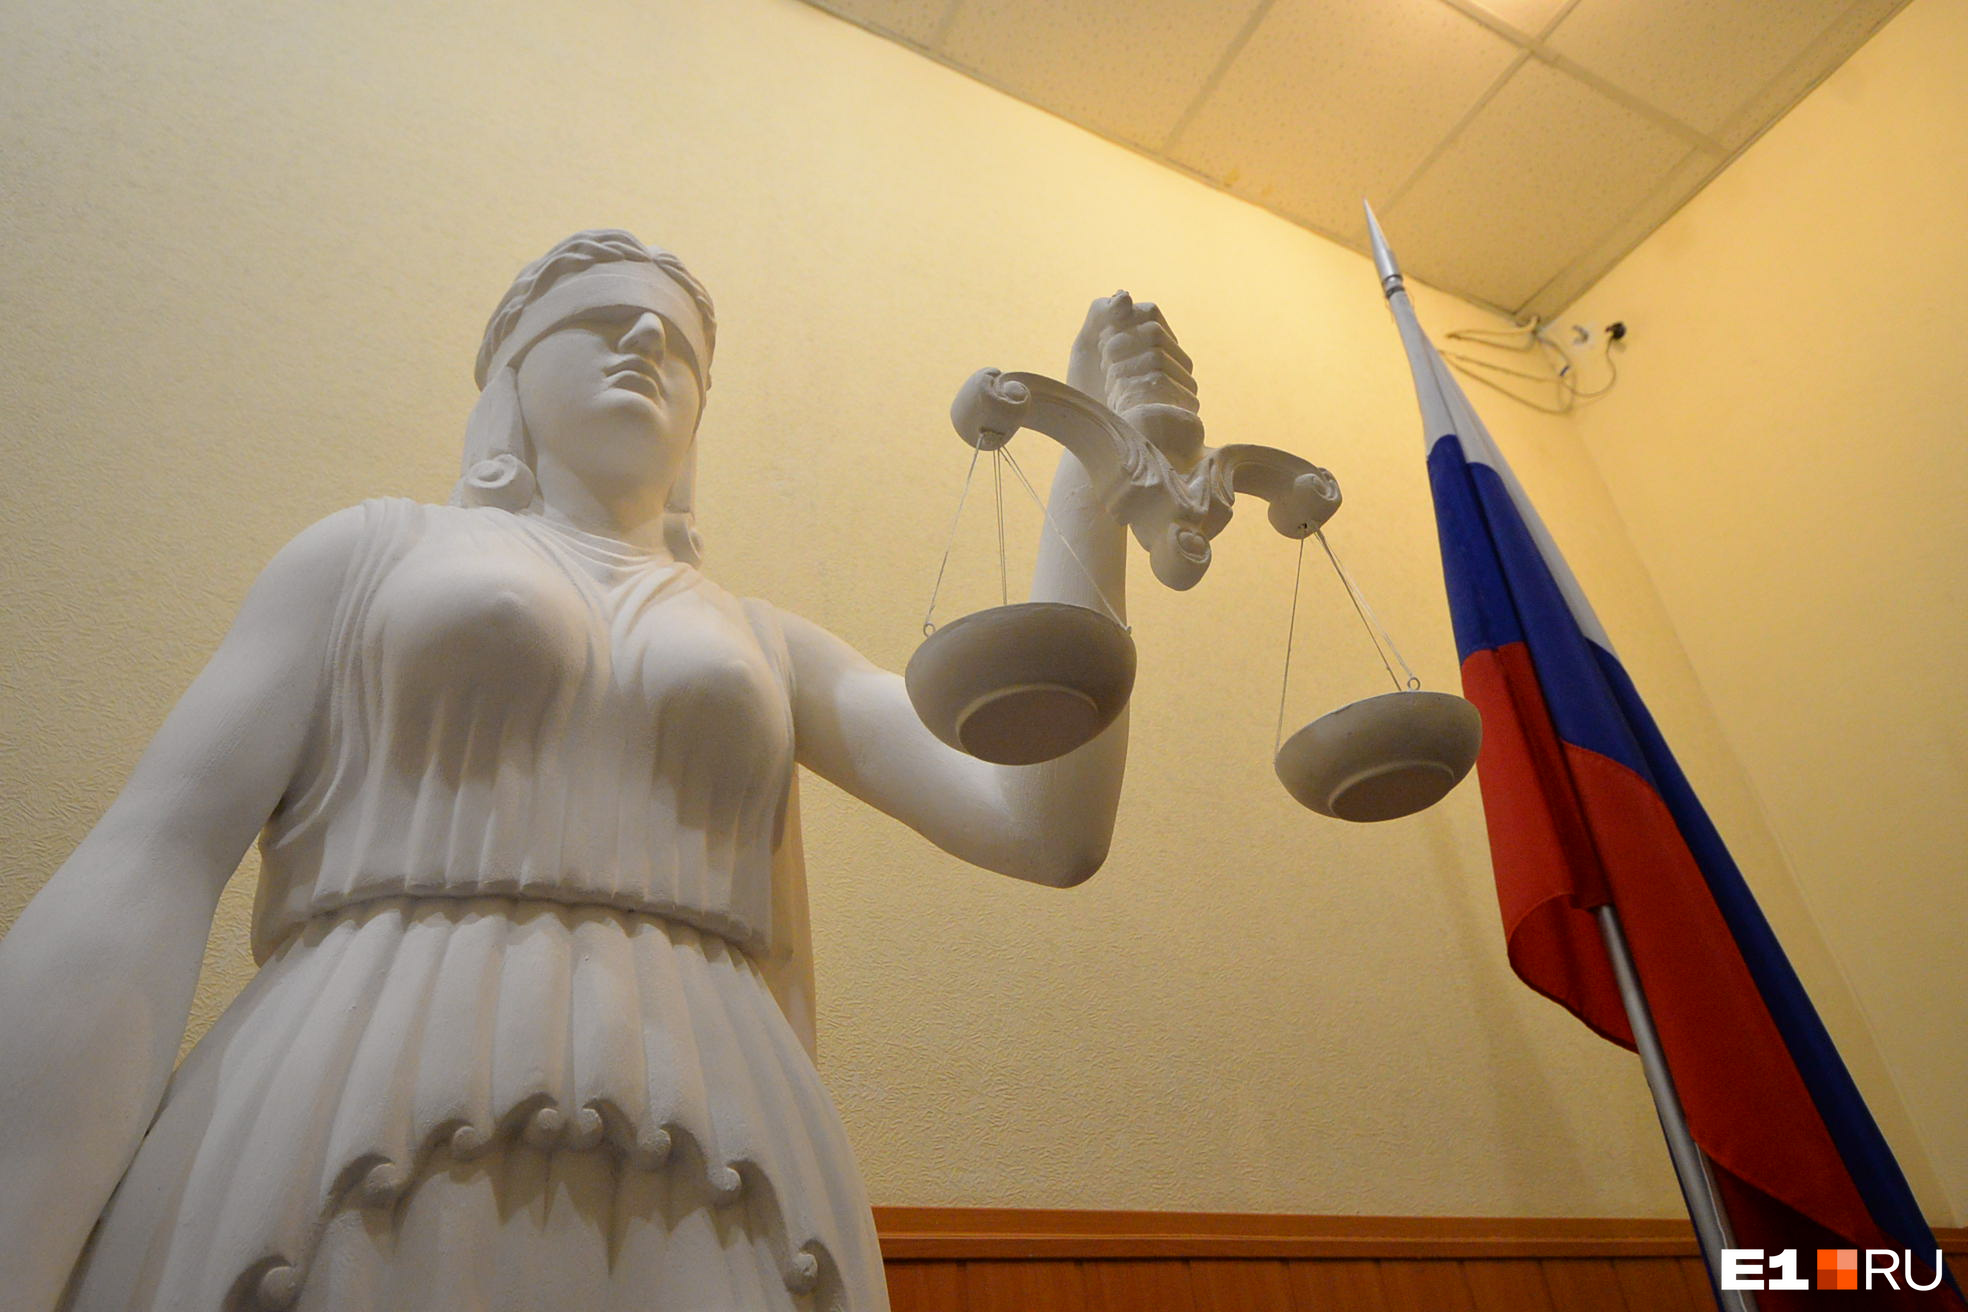 После запуска реновации в Екатеринбурге, суды, скорее всего, наполнятся заявлениями недовольных людей